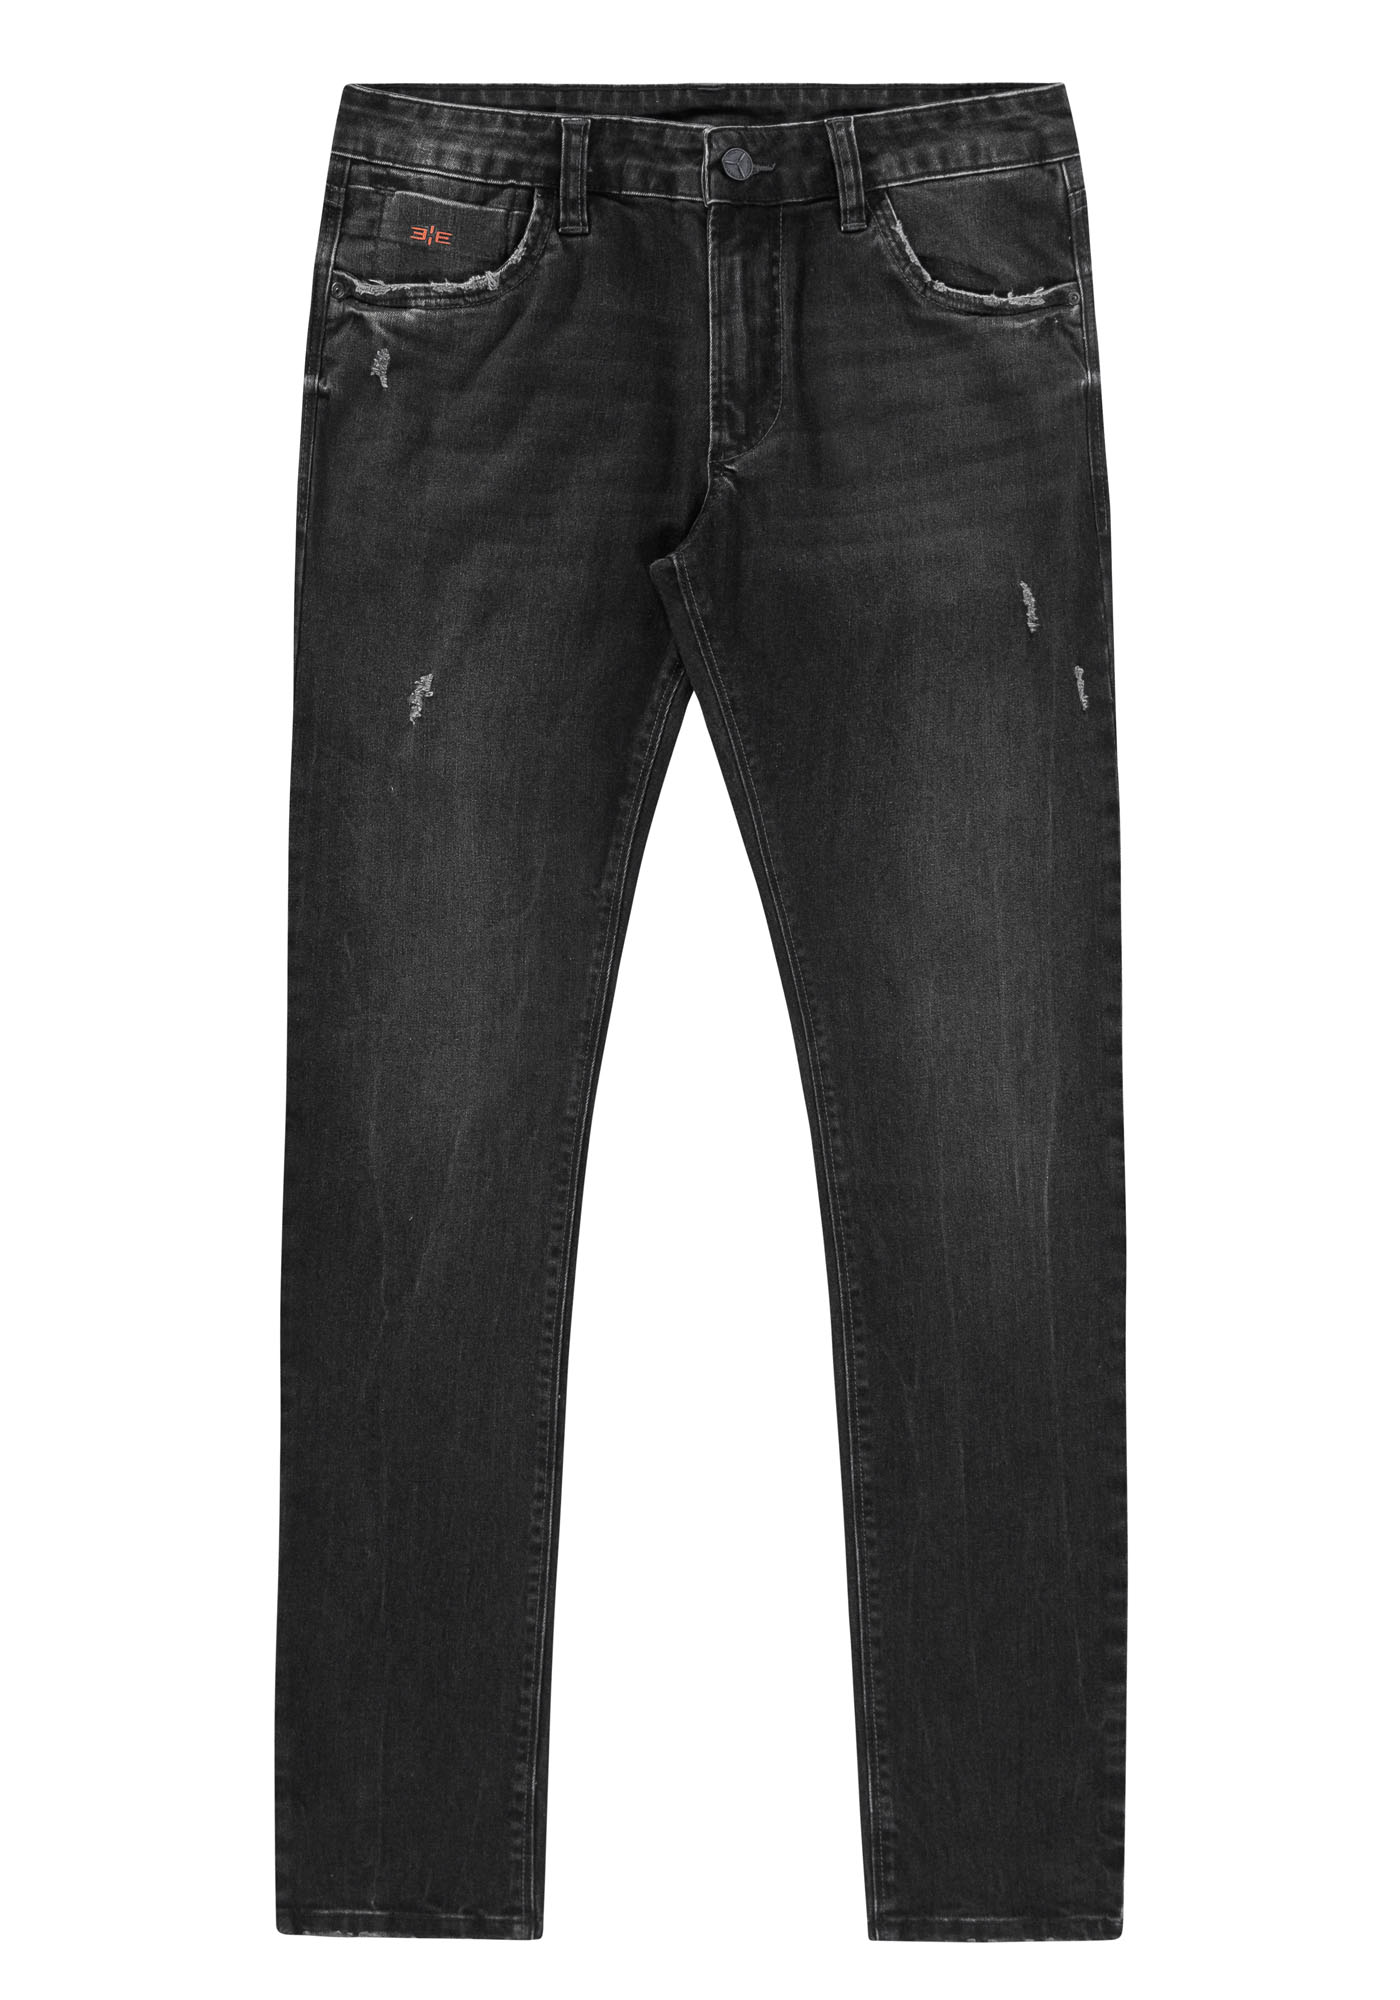 Calça Jeans Skinny Preta Cintura Alta - Hangar do Jeans